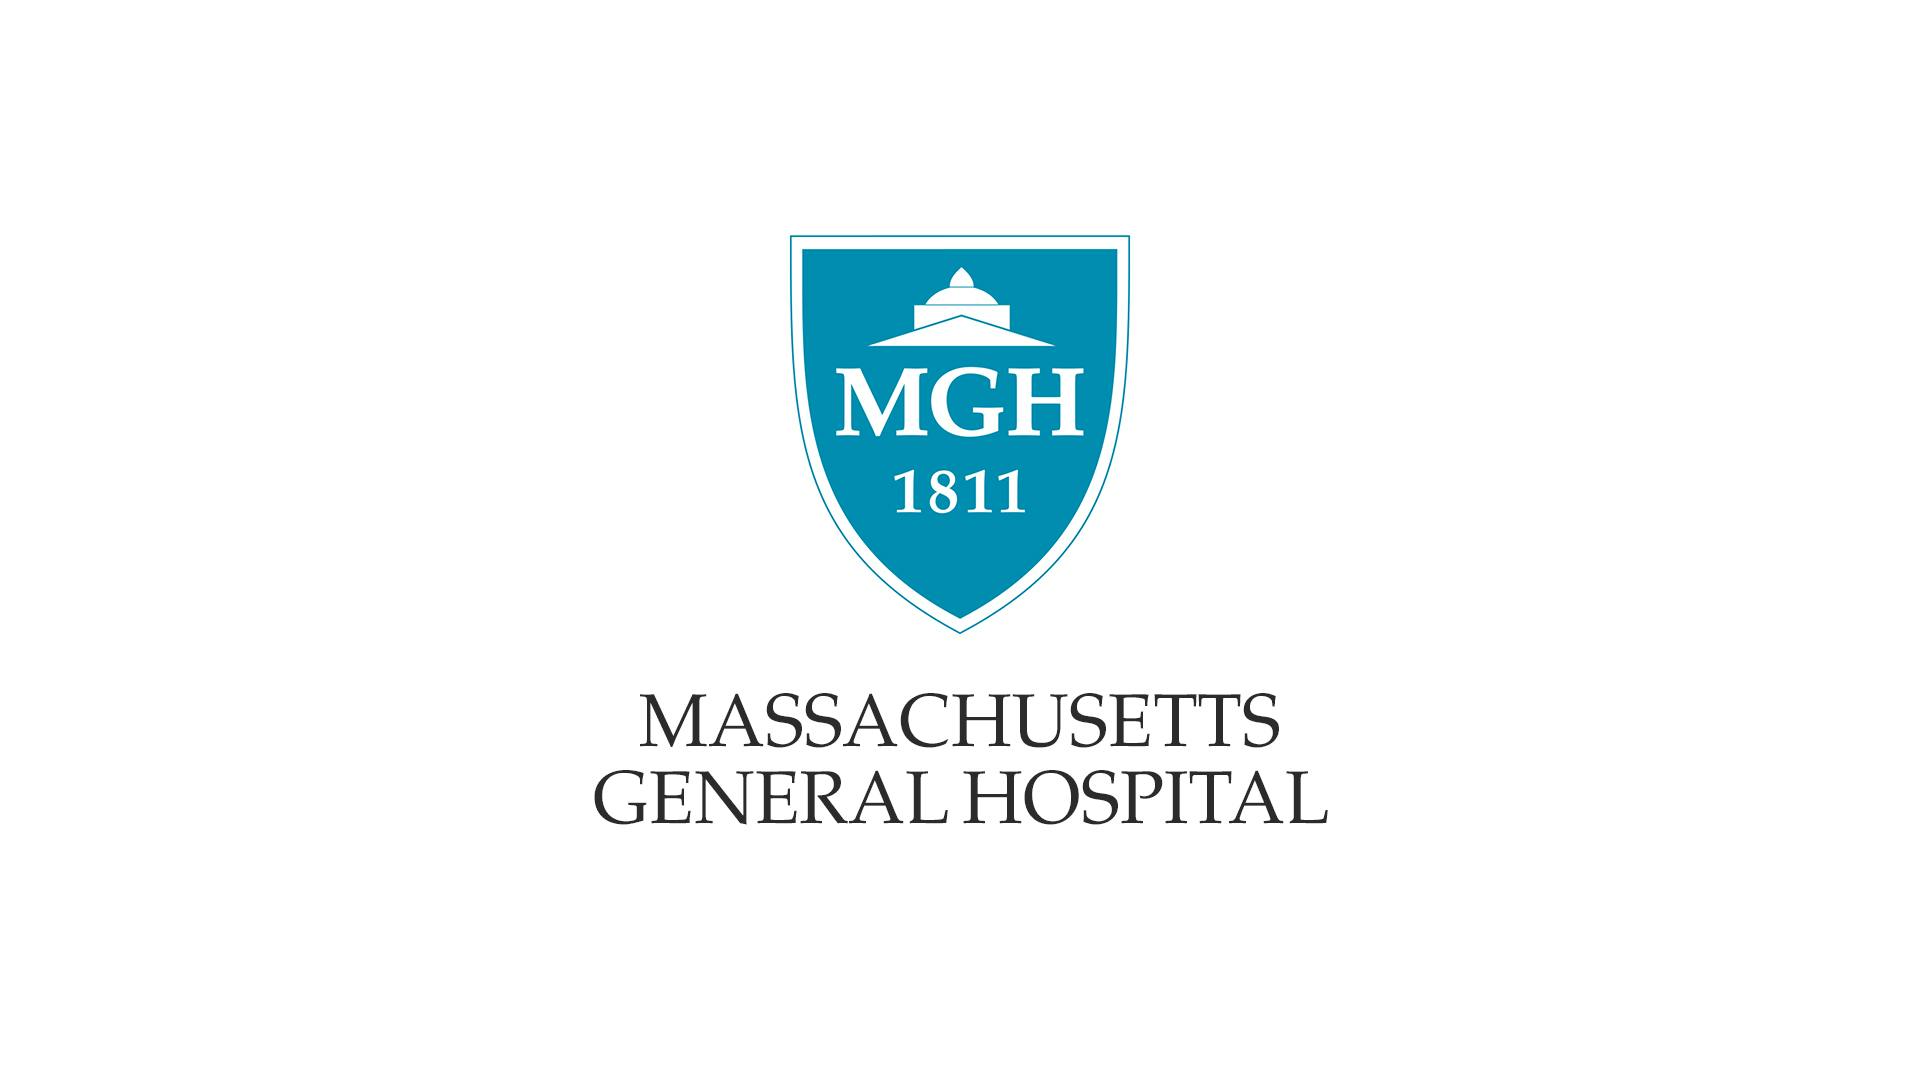 Logo del Massachusetts General Hospital su sfondo bianco: uno scudo azzurro contenente le lettere "MGH" e la data 1811.